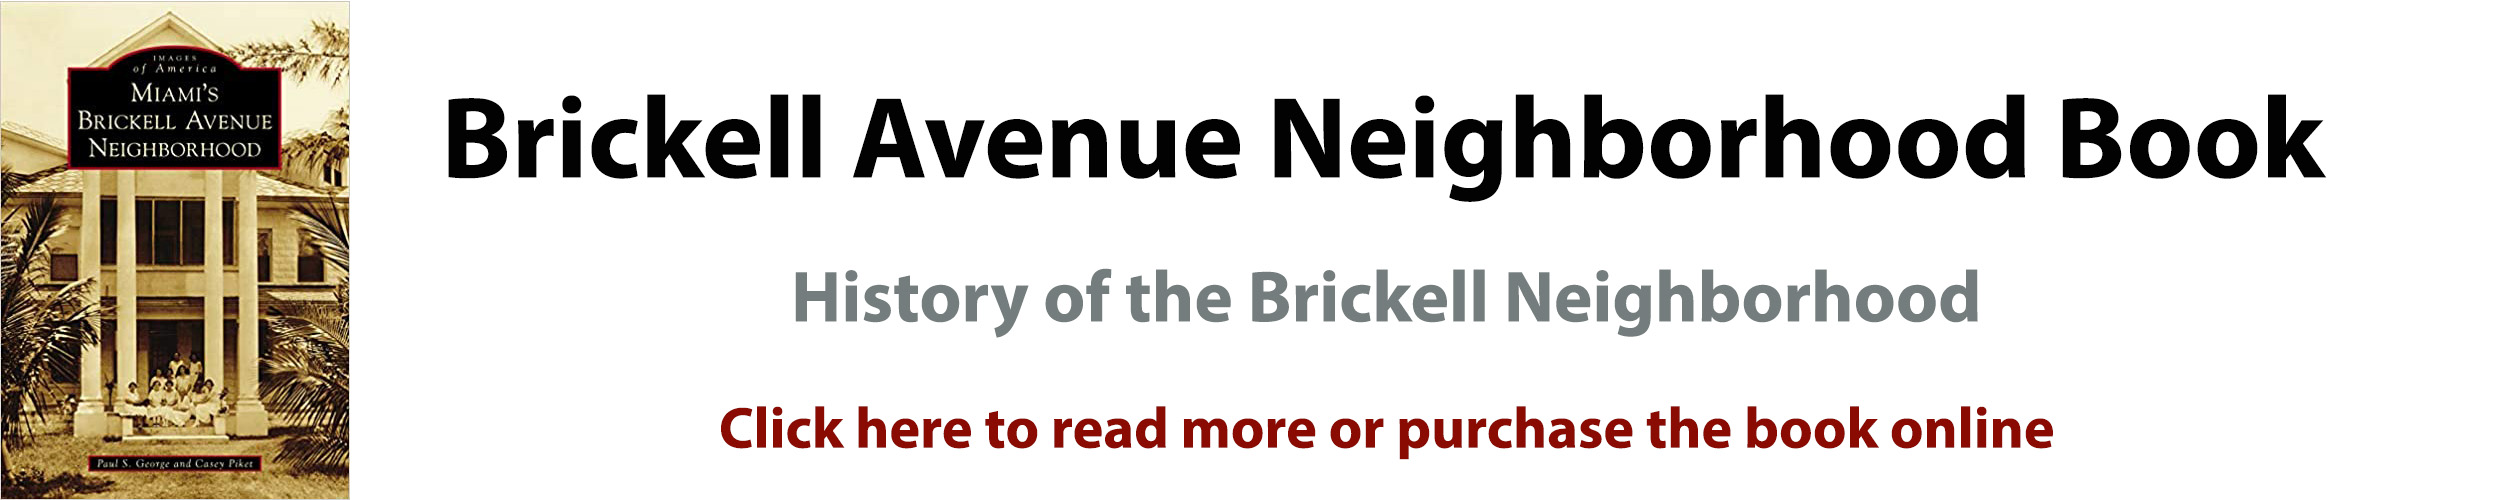 Brickell Avenue Neighborhood